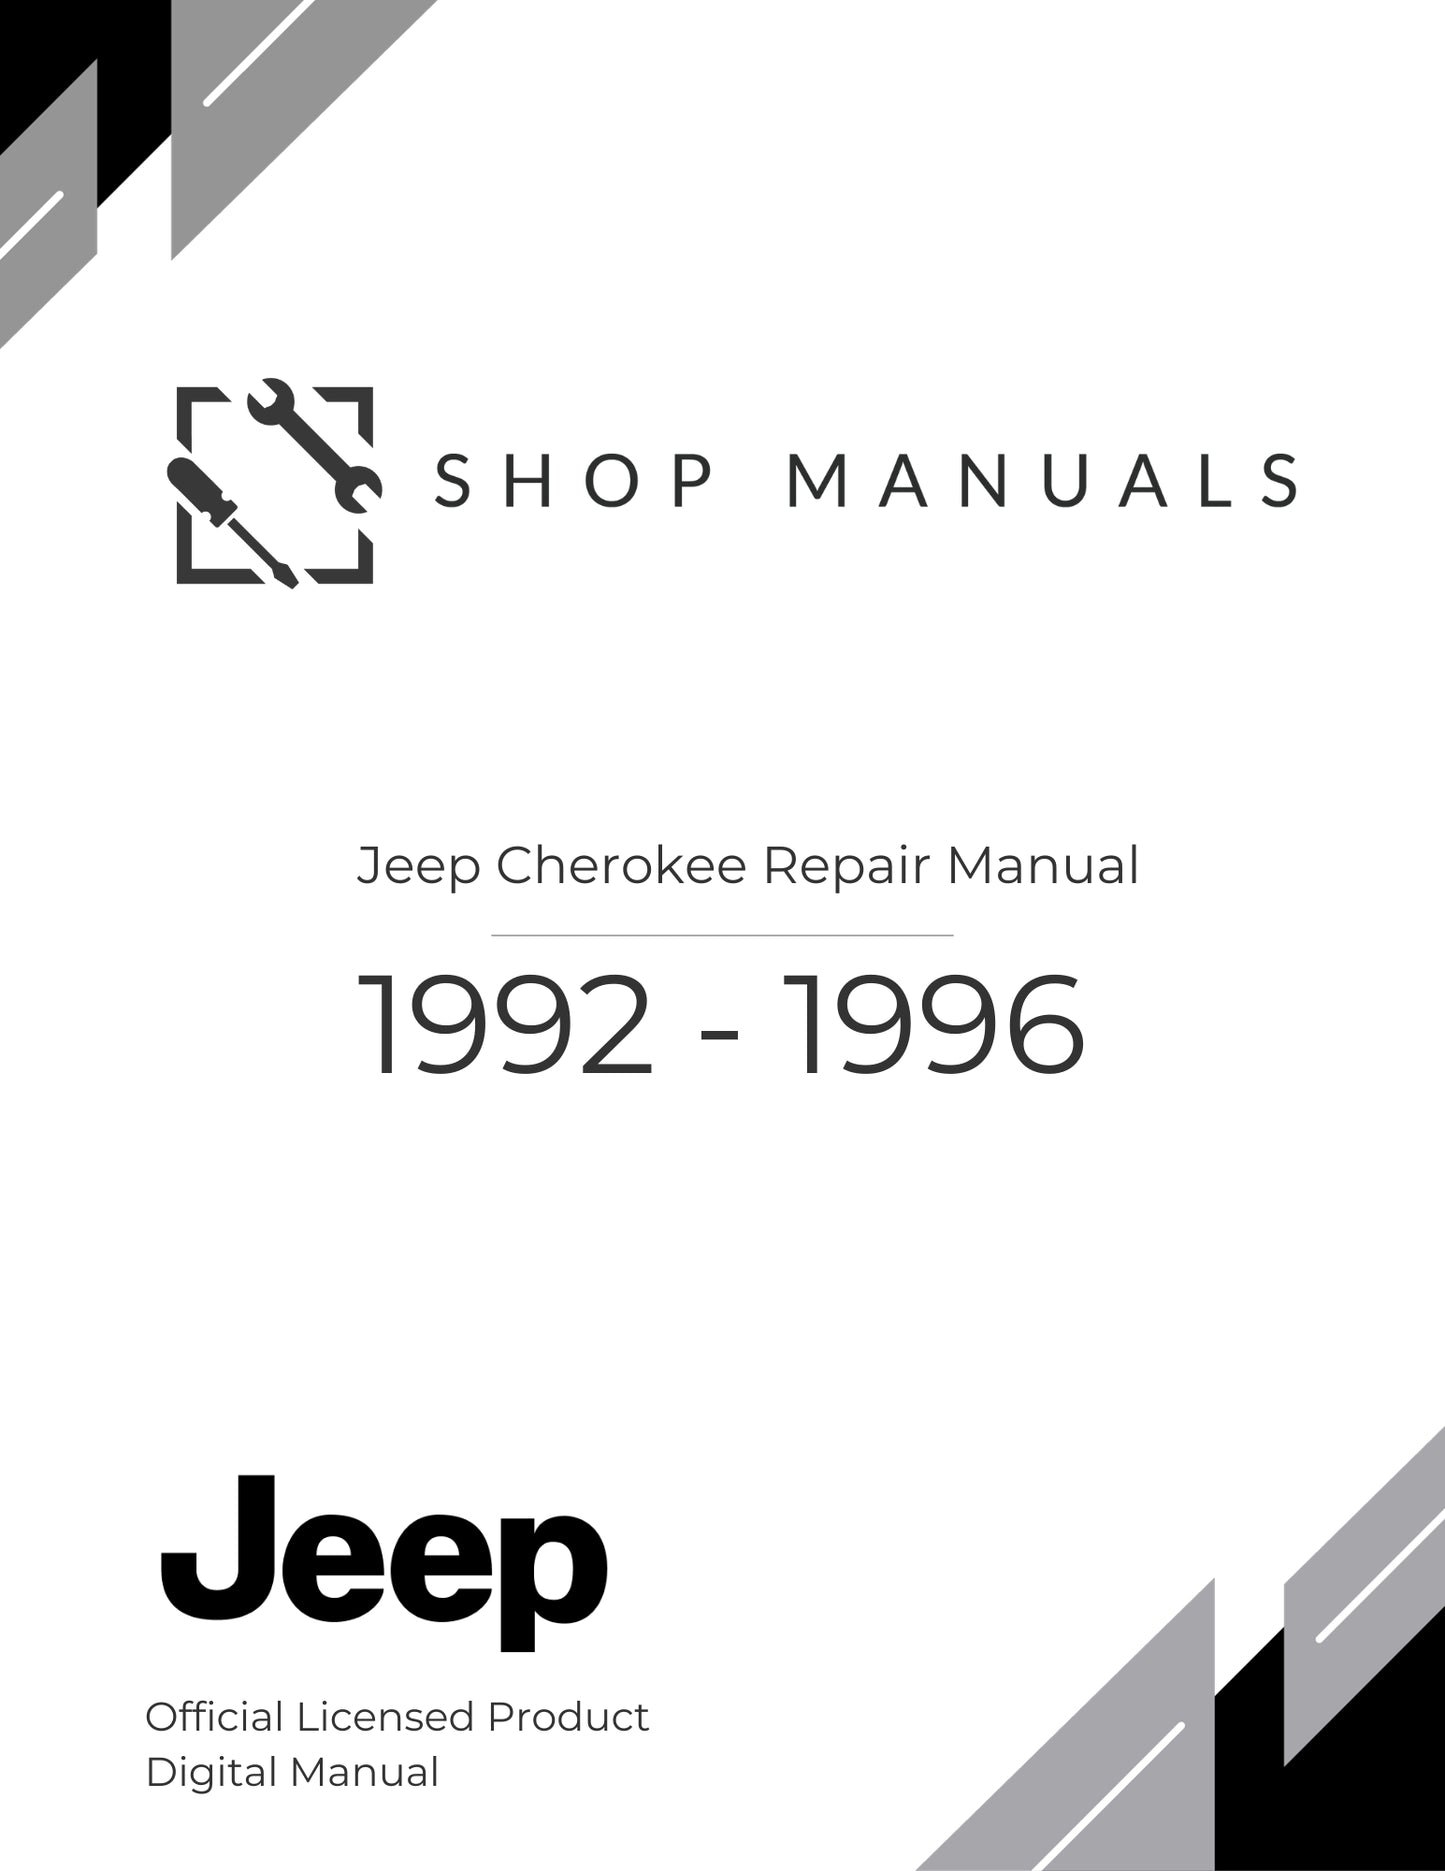 1992 - 1996 Jeep Cherokee Repair Manual